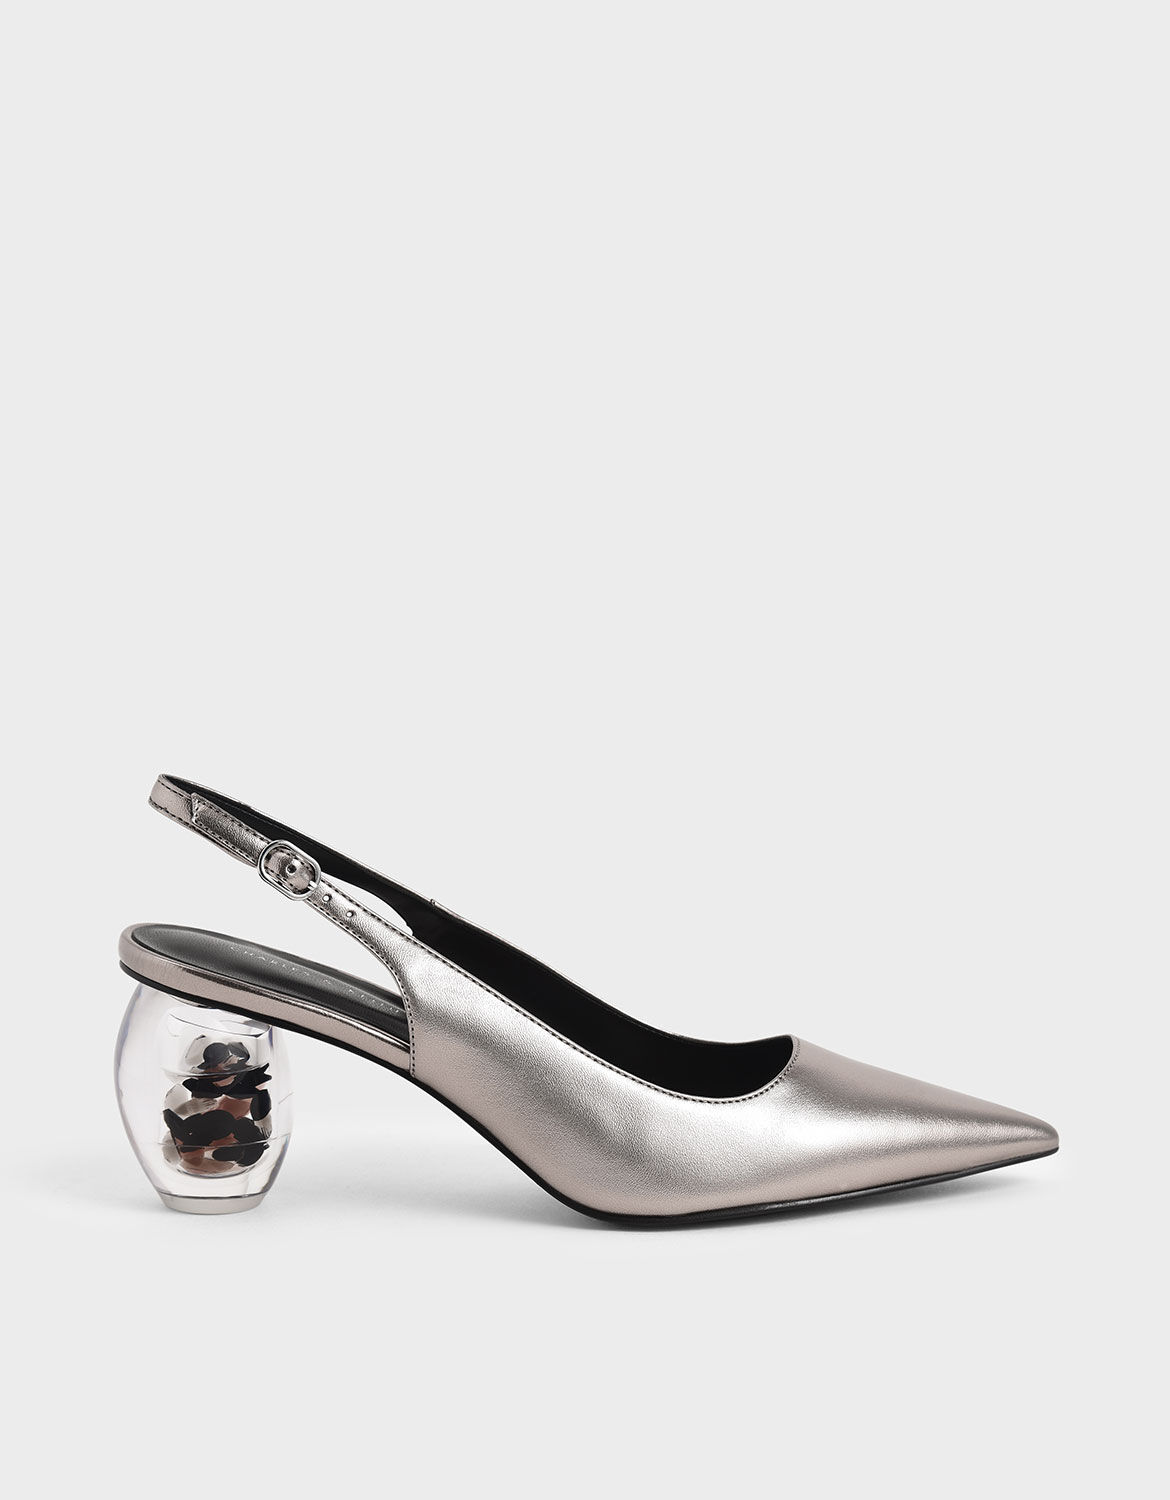 metallic pewter heels